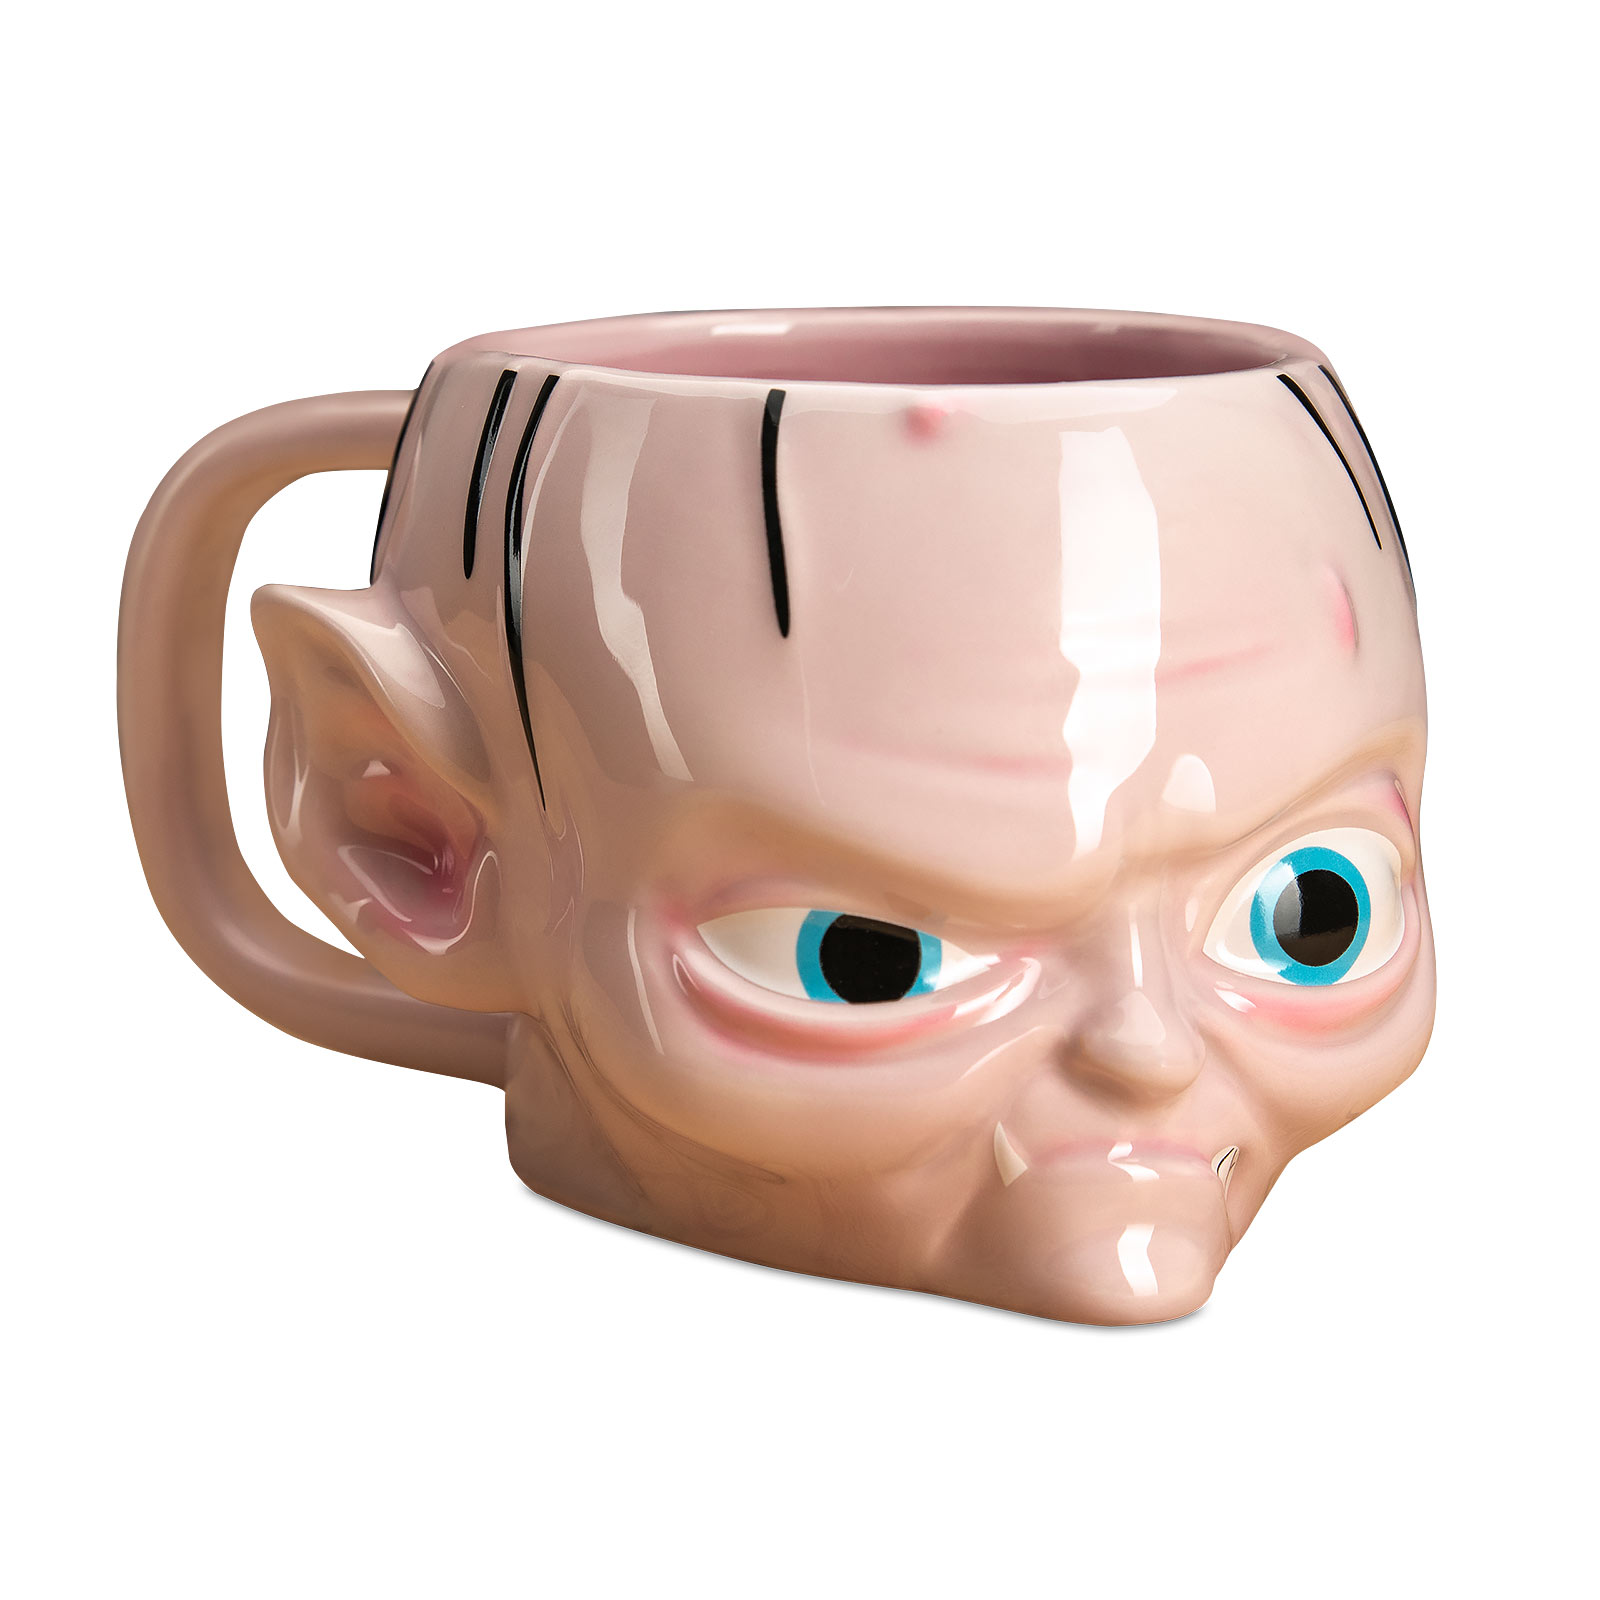 Lord of the Rings - Gollum 3D Mug